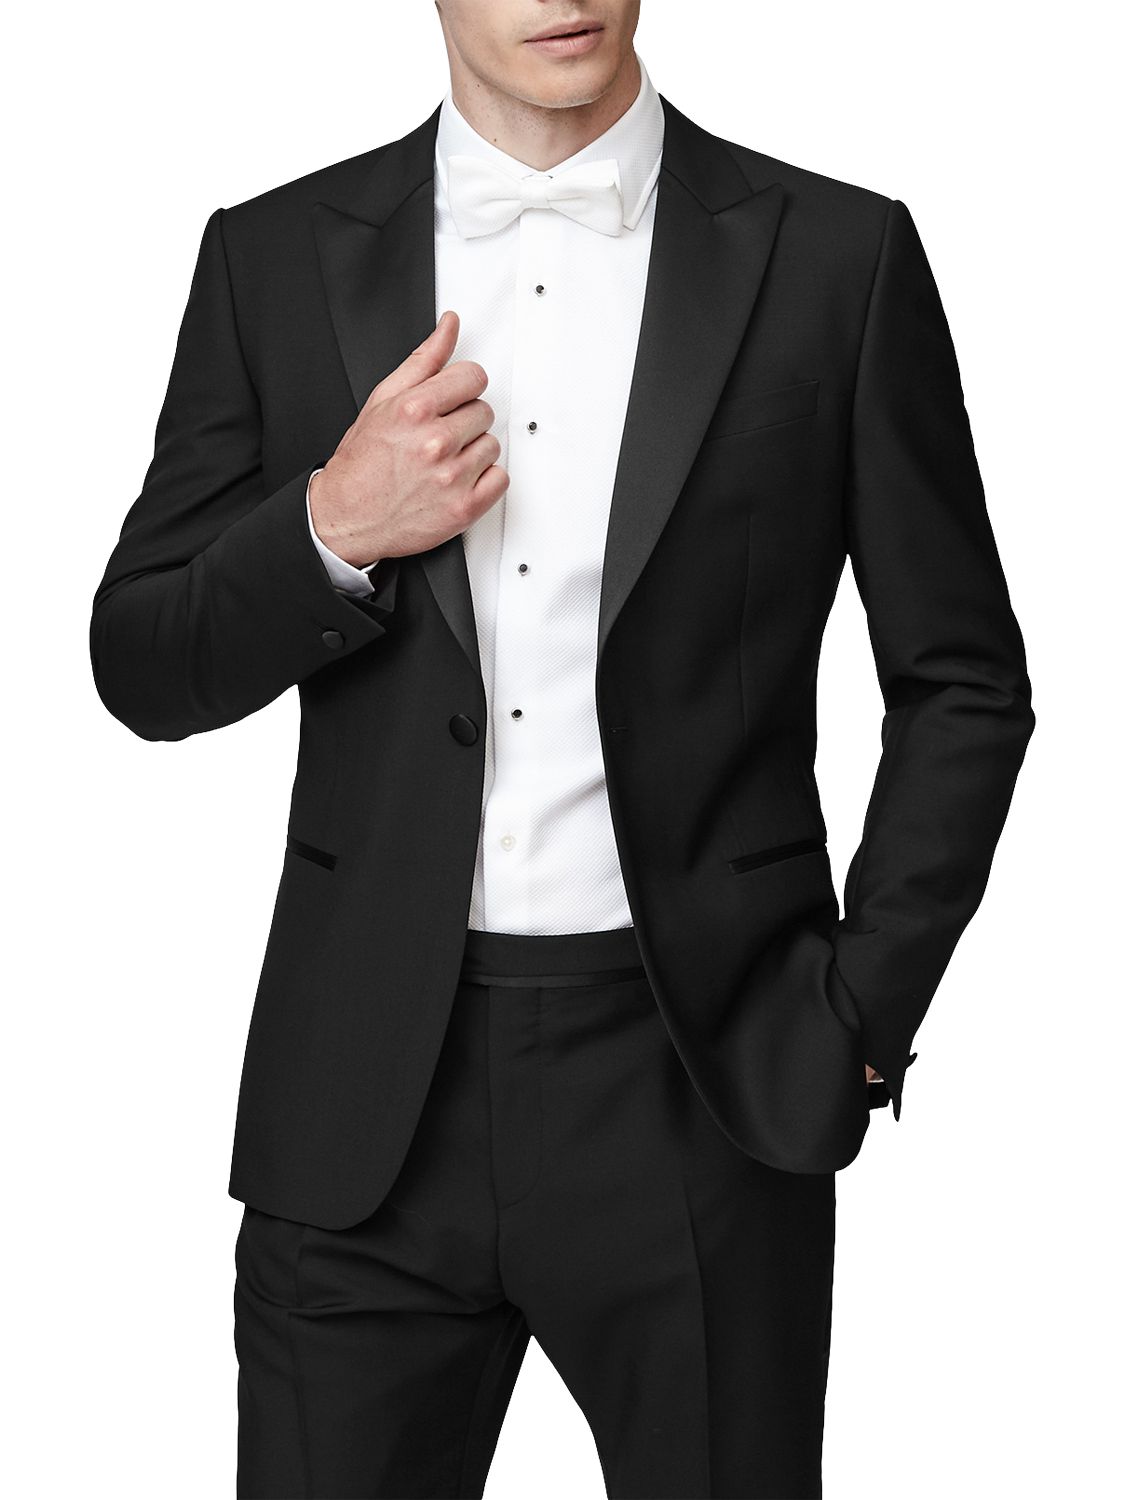 Reiss Mayfair Peak Lapel Modern Fit Dinner Suit, Black